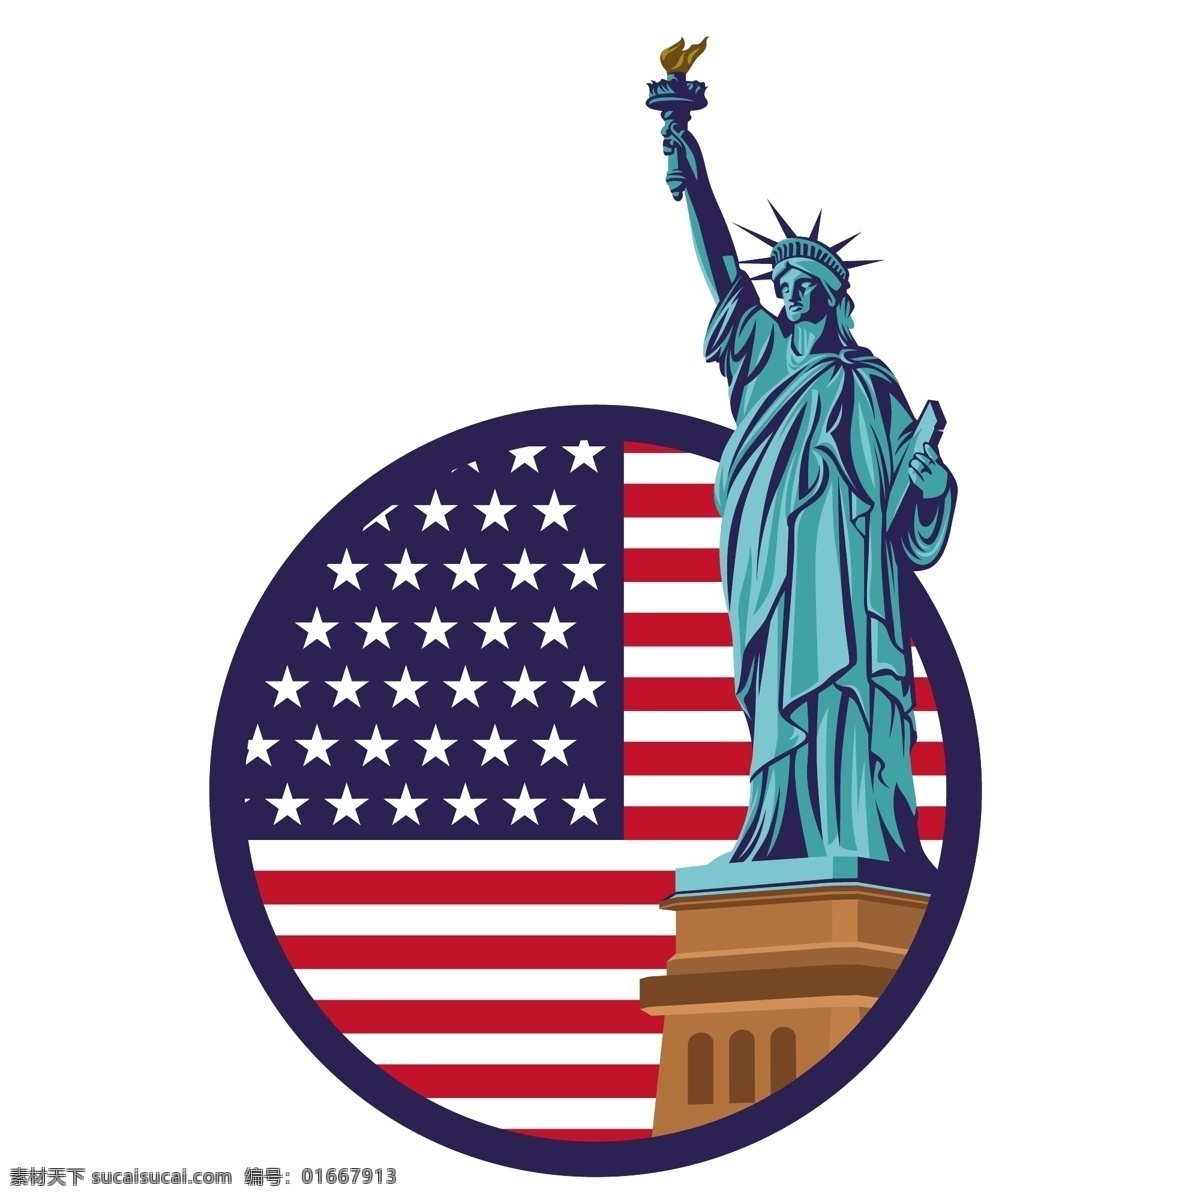 自由女神像 美国素材 设计素材 美国元素 旅游素材 美国 雕像 星条旗 世界旅游 背景图片 自然景观 人文景观